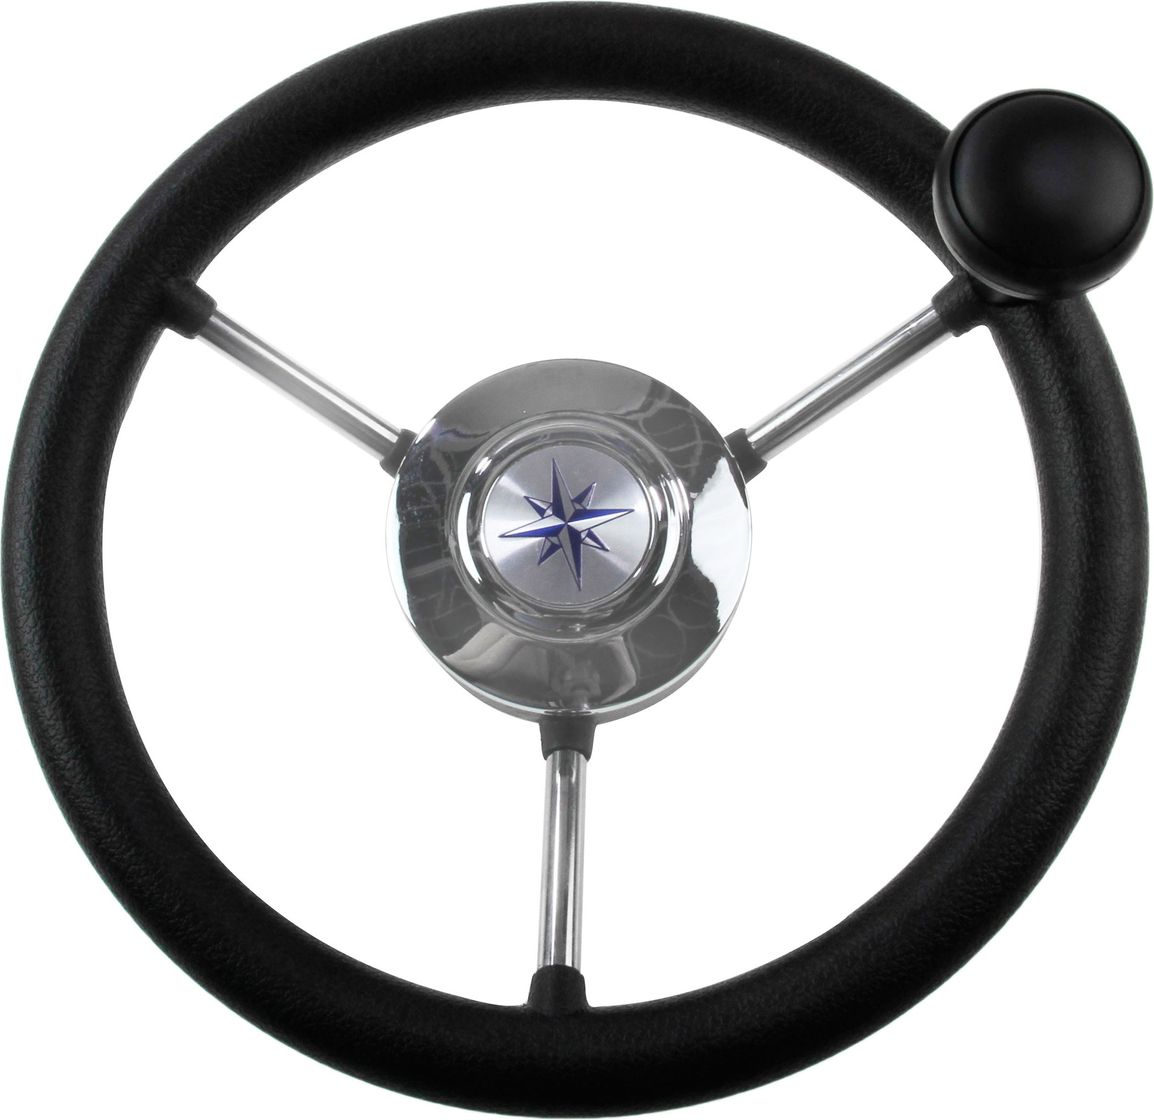 Рулевое колесо LIPARI обод черный, спицы серебряные д. 280 мм со спинером VN828050-01 рулевое колесо elba sport обод спицы серебряные д 320 мм vn13321 01